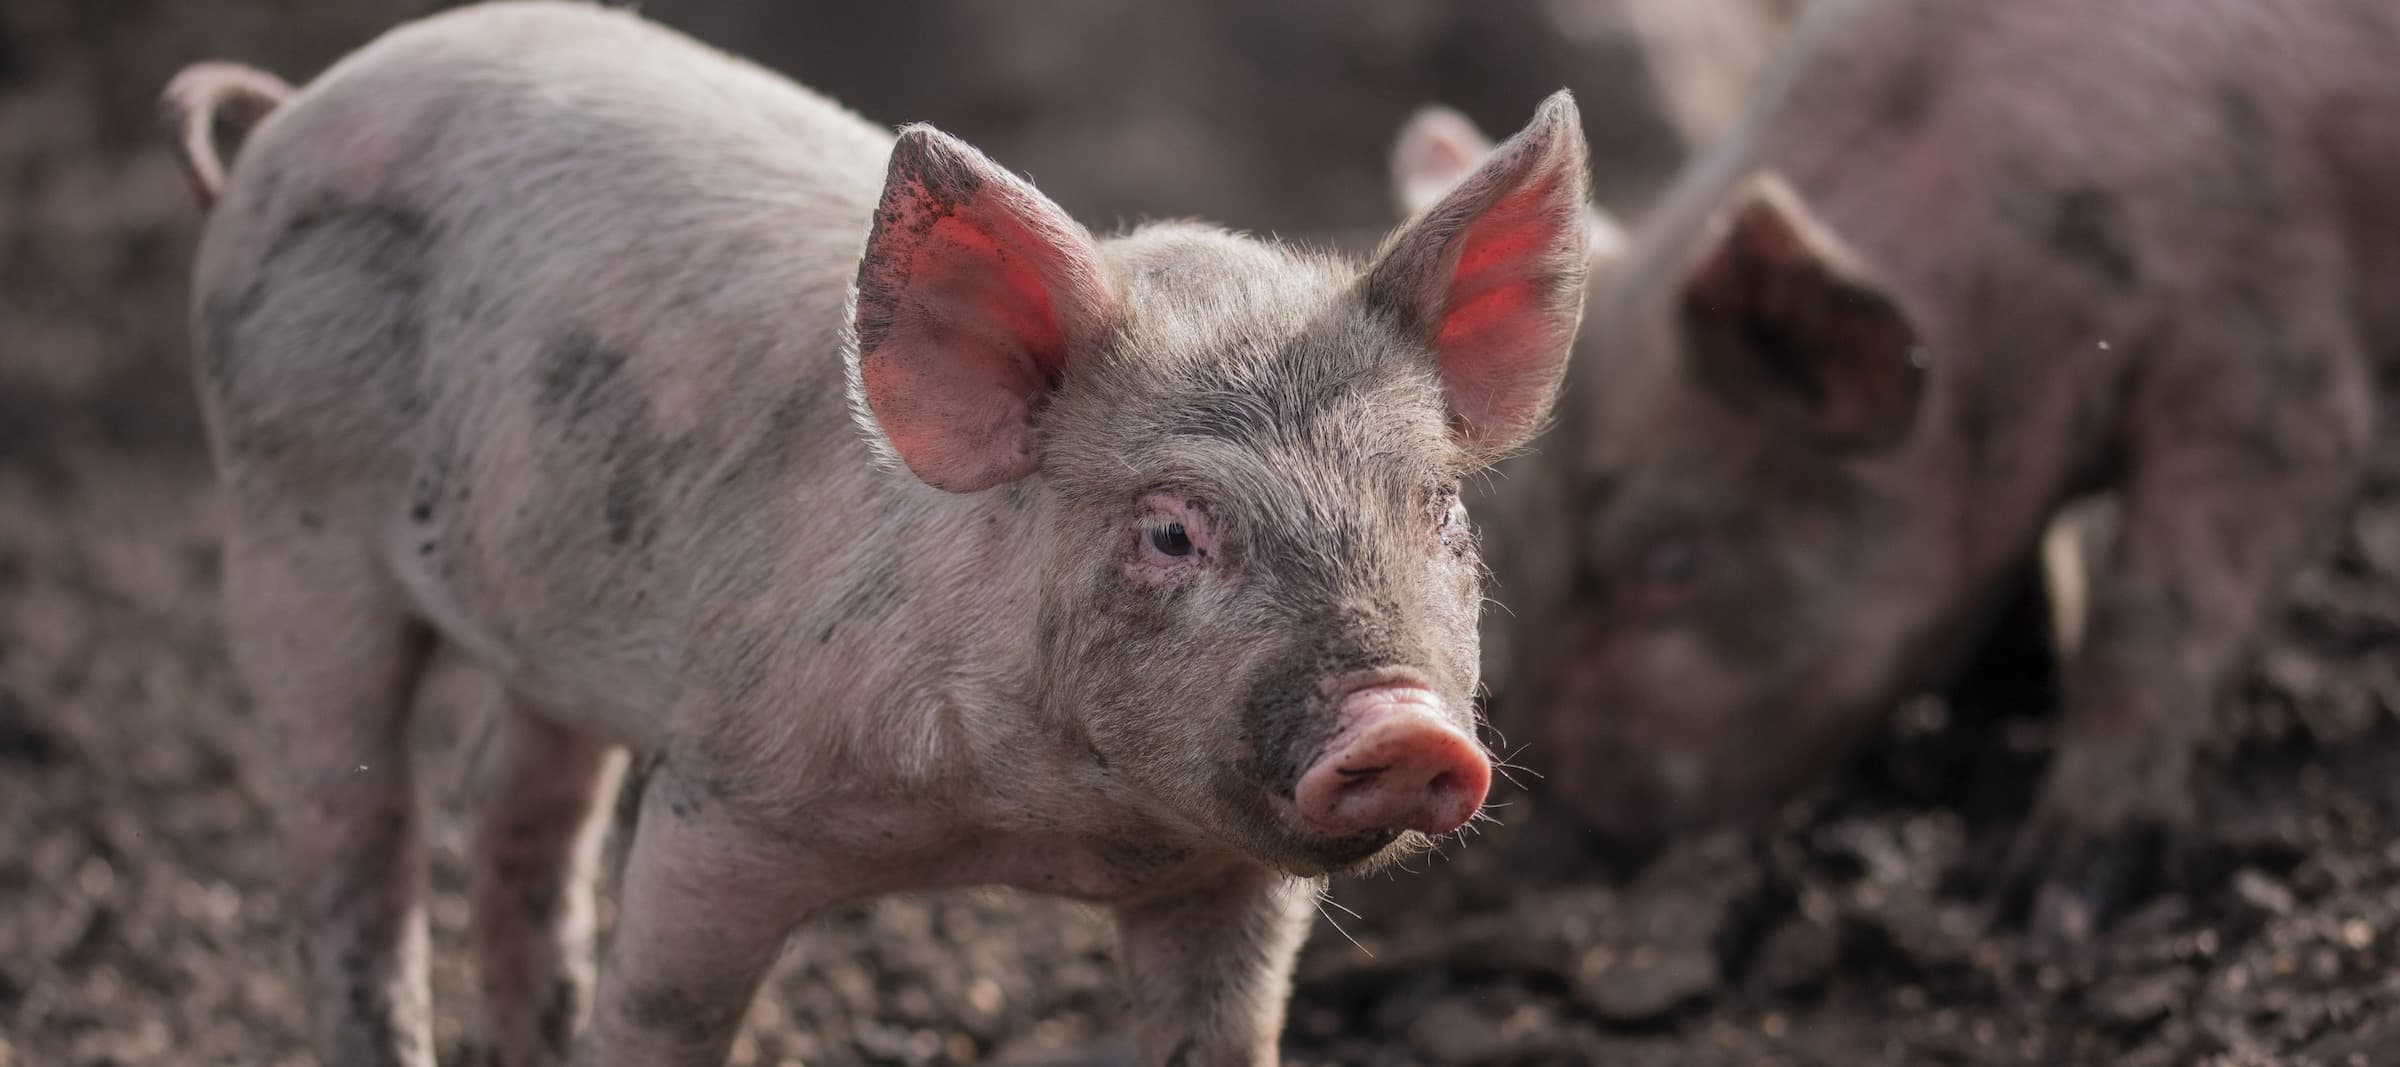 Фото новости: "Производители сельхозкормов предупредили о риске подорожания свинины"